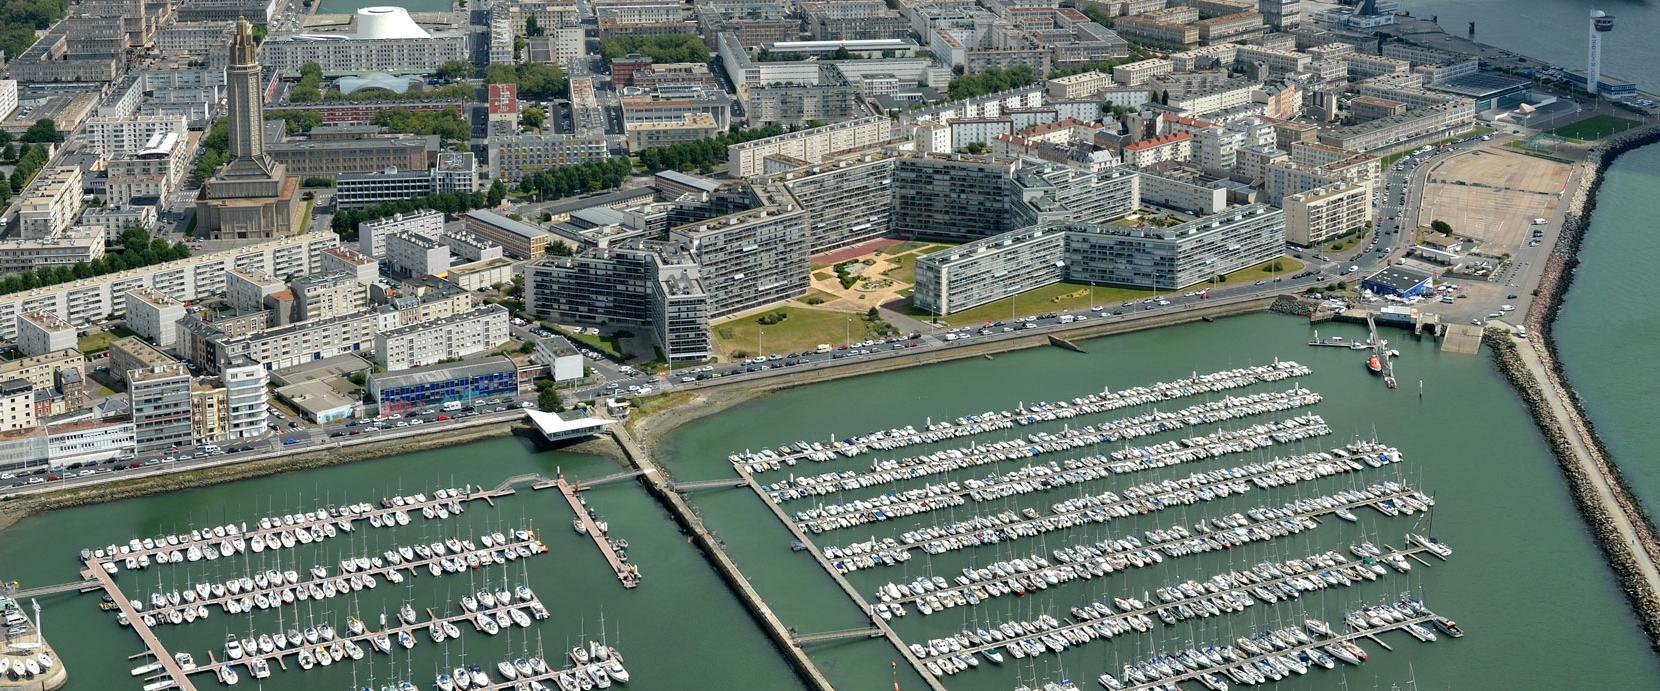 Front de mer, port de plaisance, Le Havre